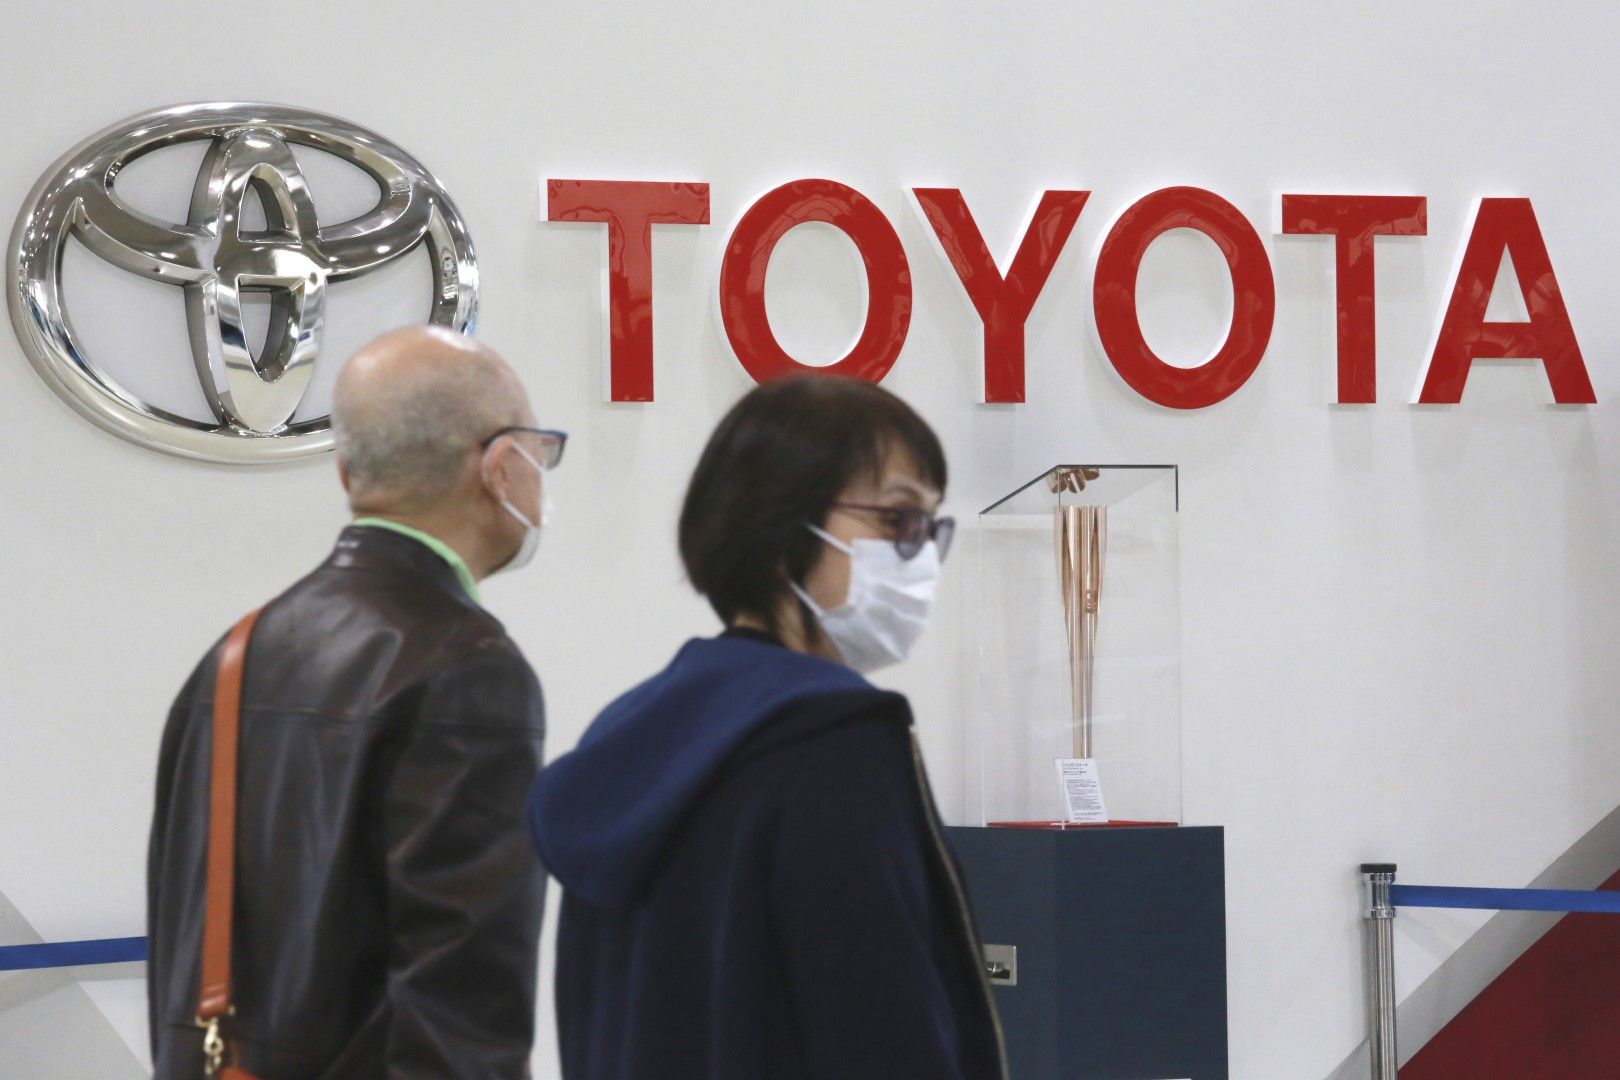  Toyota е водещата японска марка в Русия, произвеждаща около 80 000 автомобила в завода си в Санкт Петербург, в който работят 2000 служители